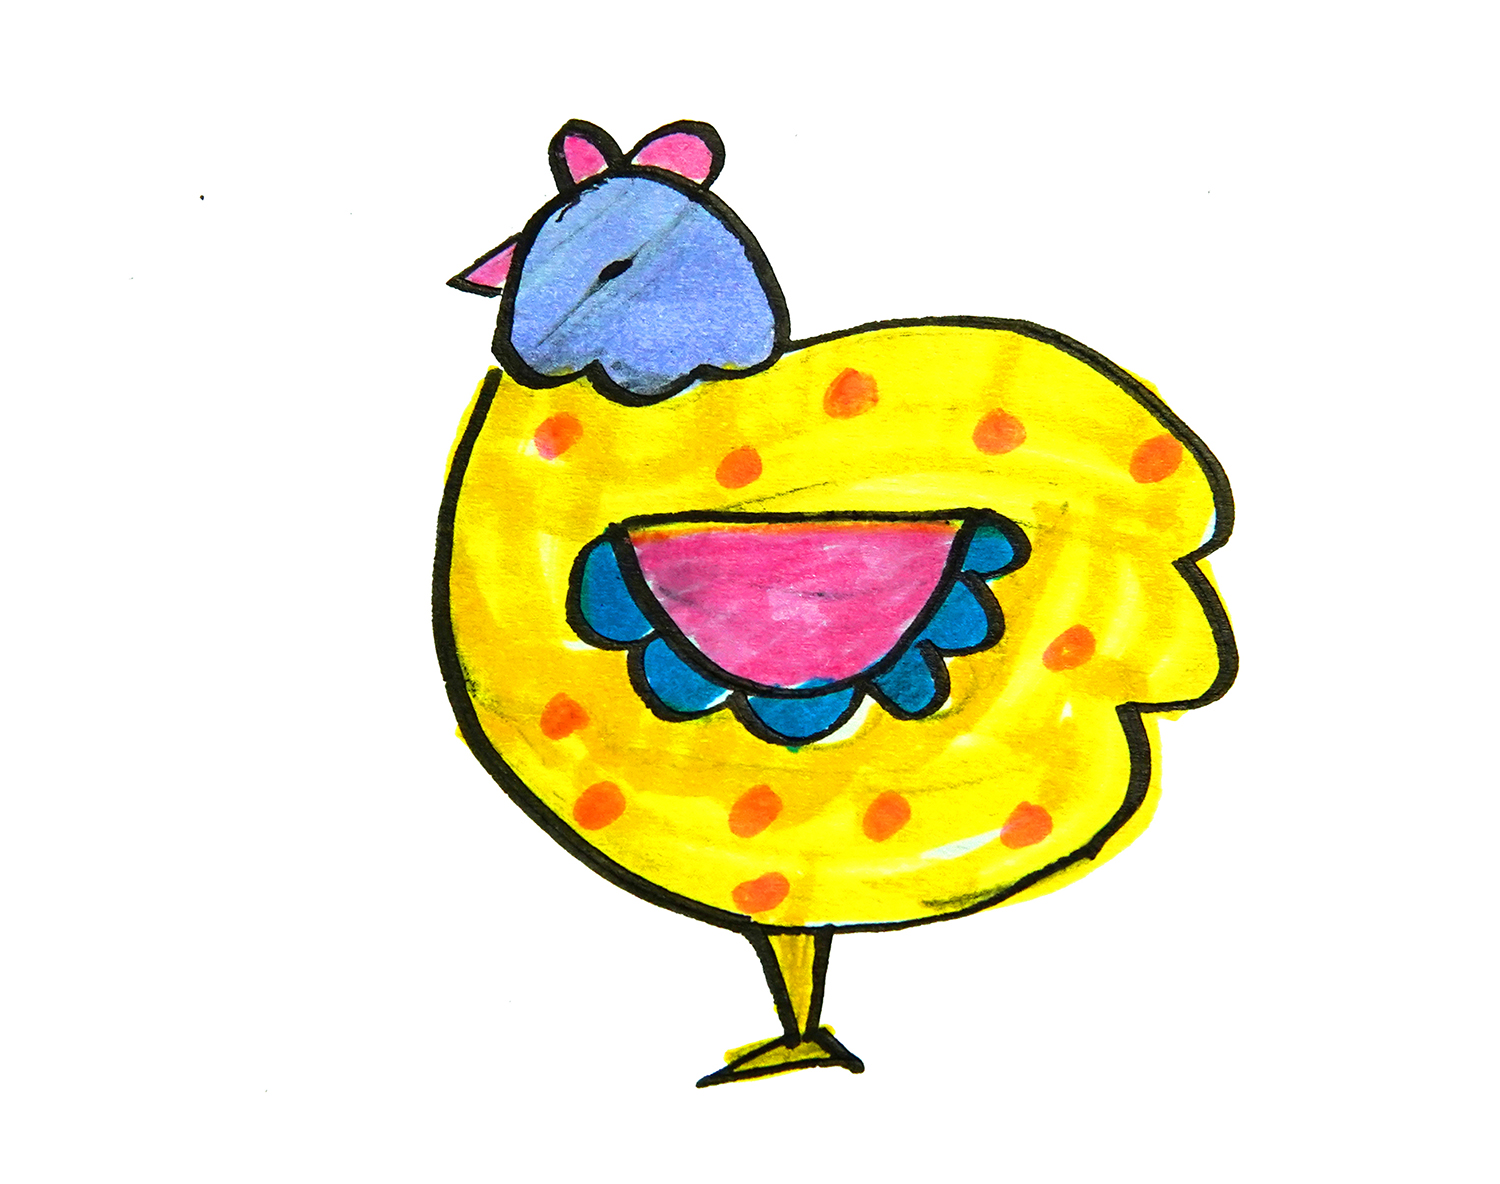 少儿简单简笔画 可爱简笔画小鸡的画法步骤图💛巧艺网